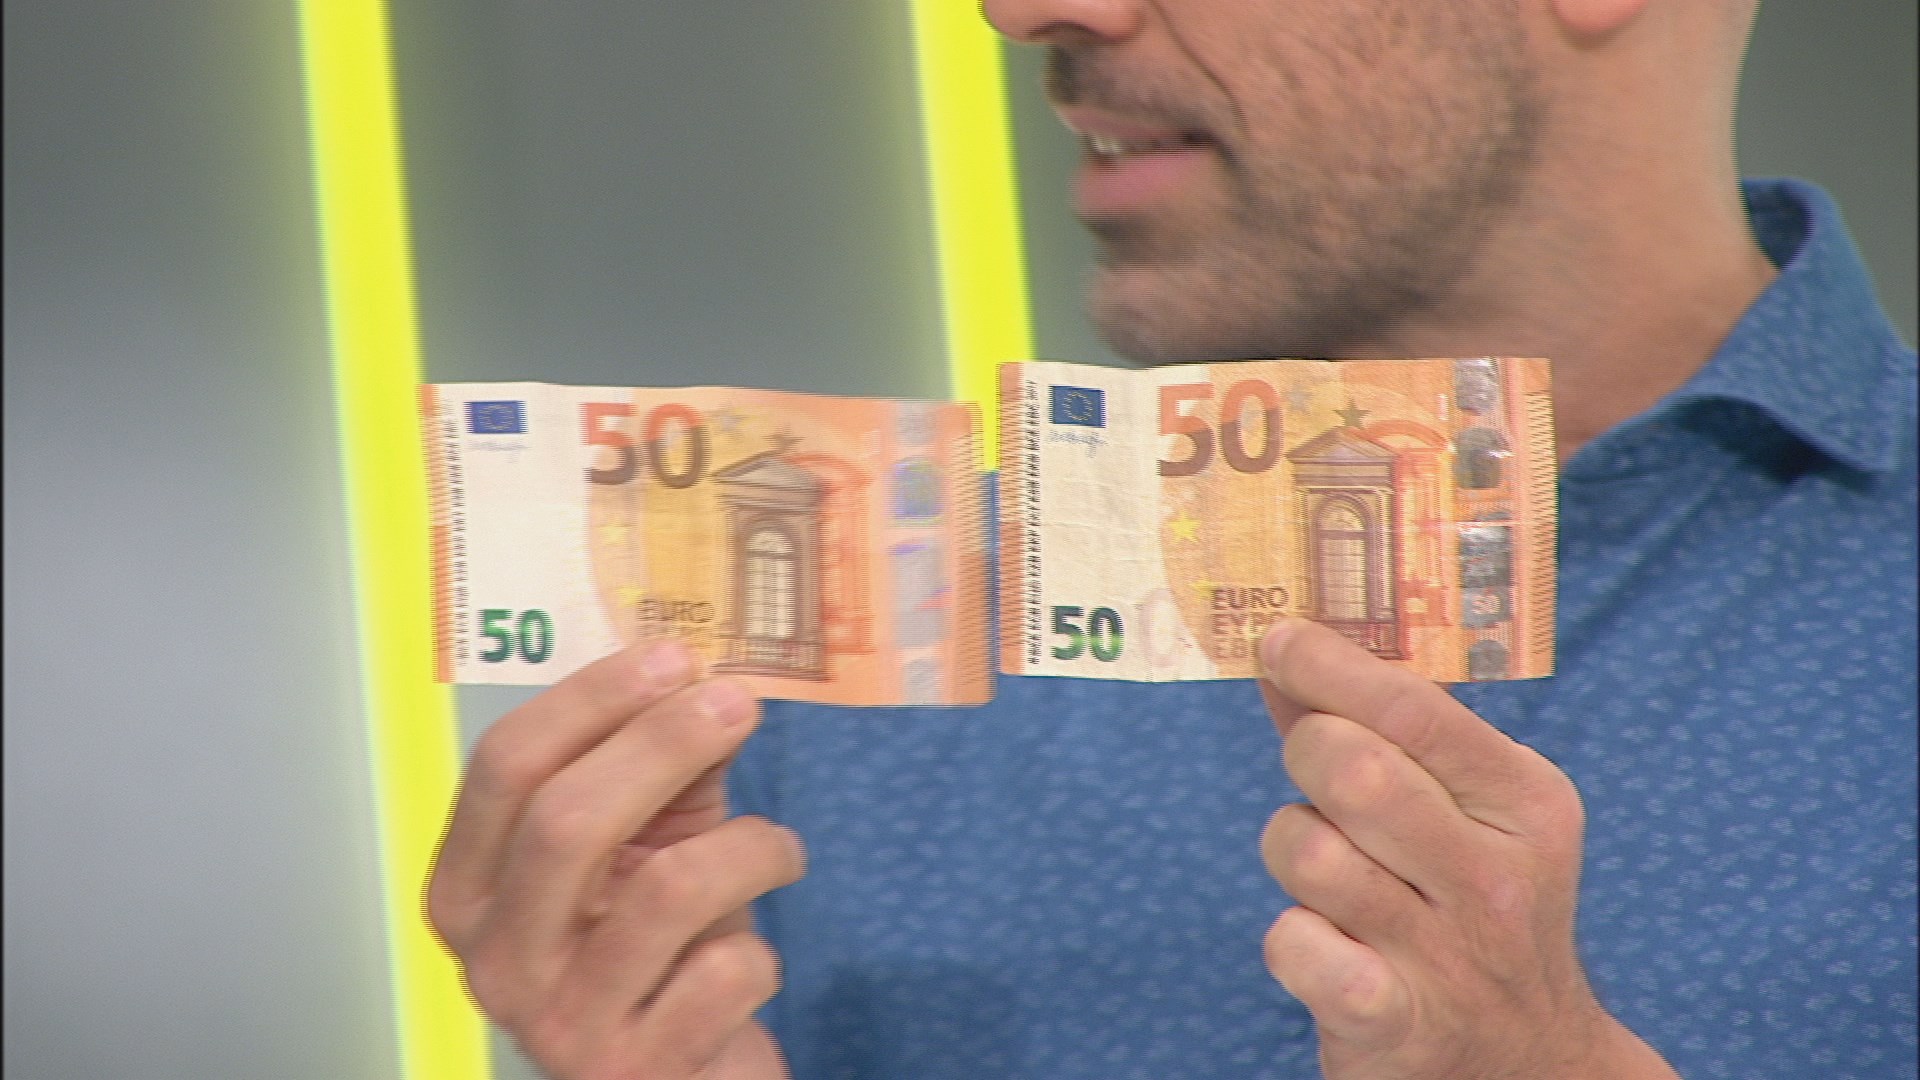 Alertan de la circulación de billetes falsos de 50 euros en San Fernando de Henares